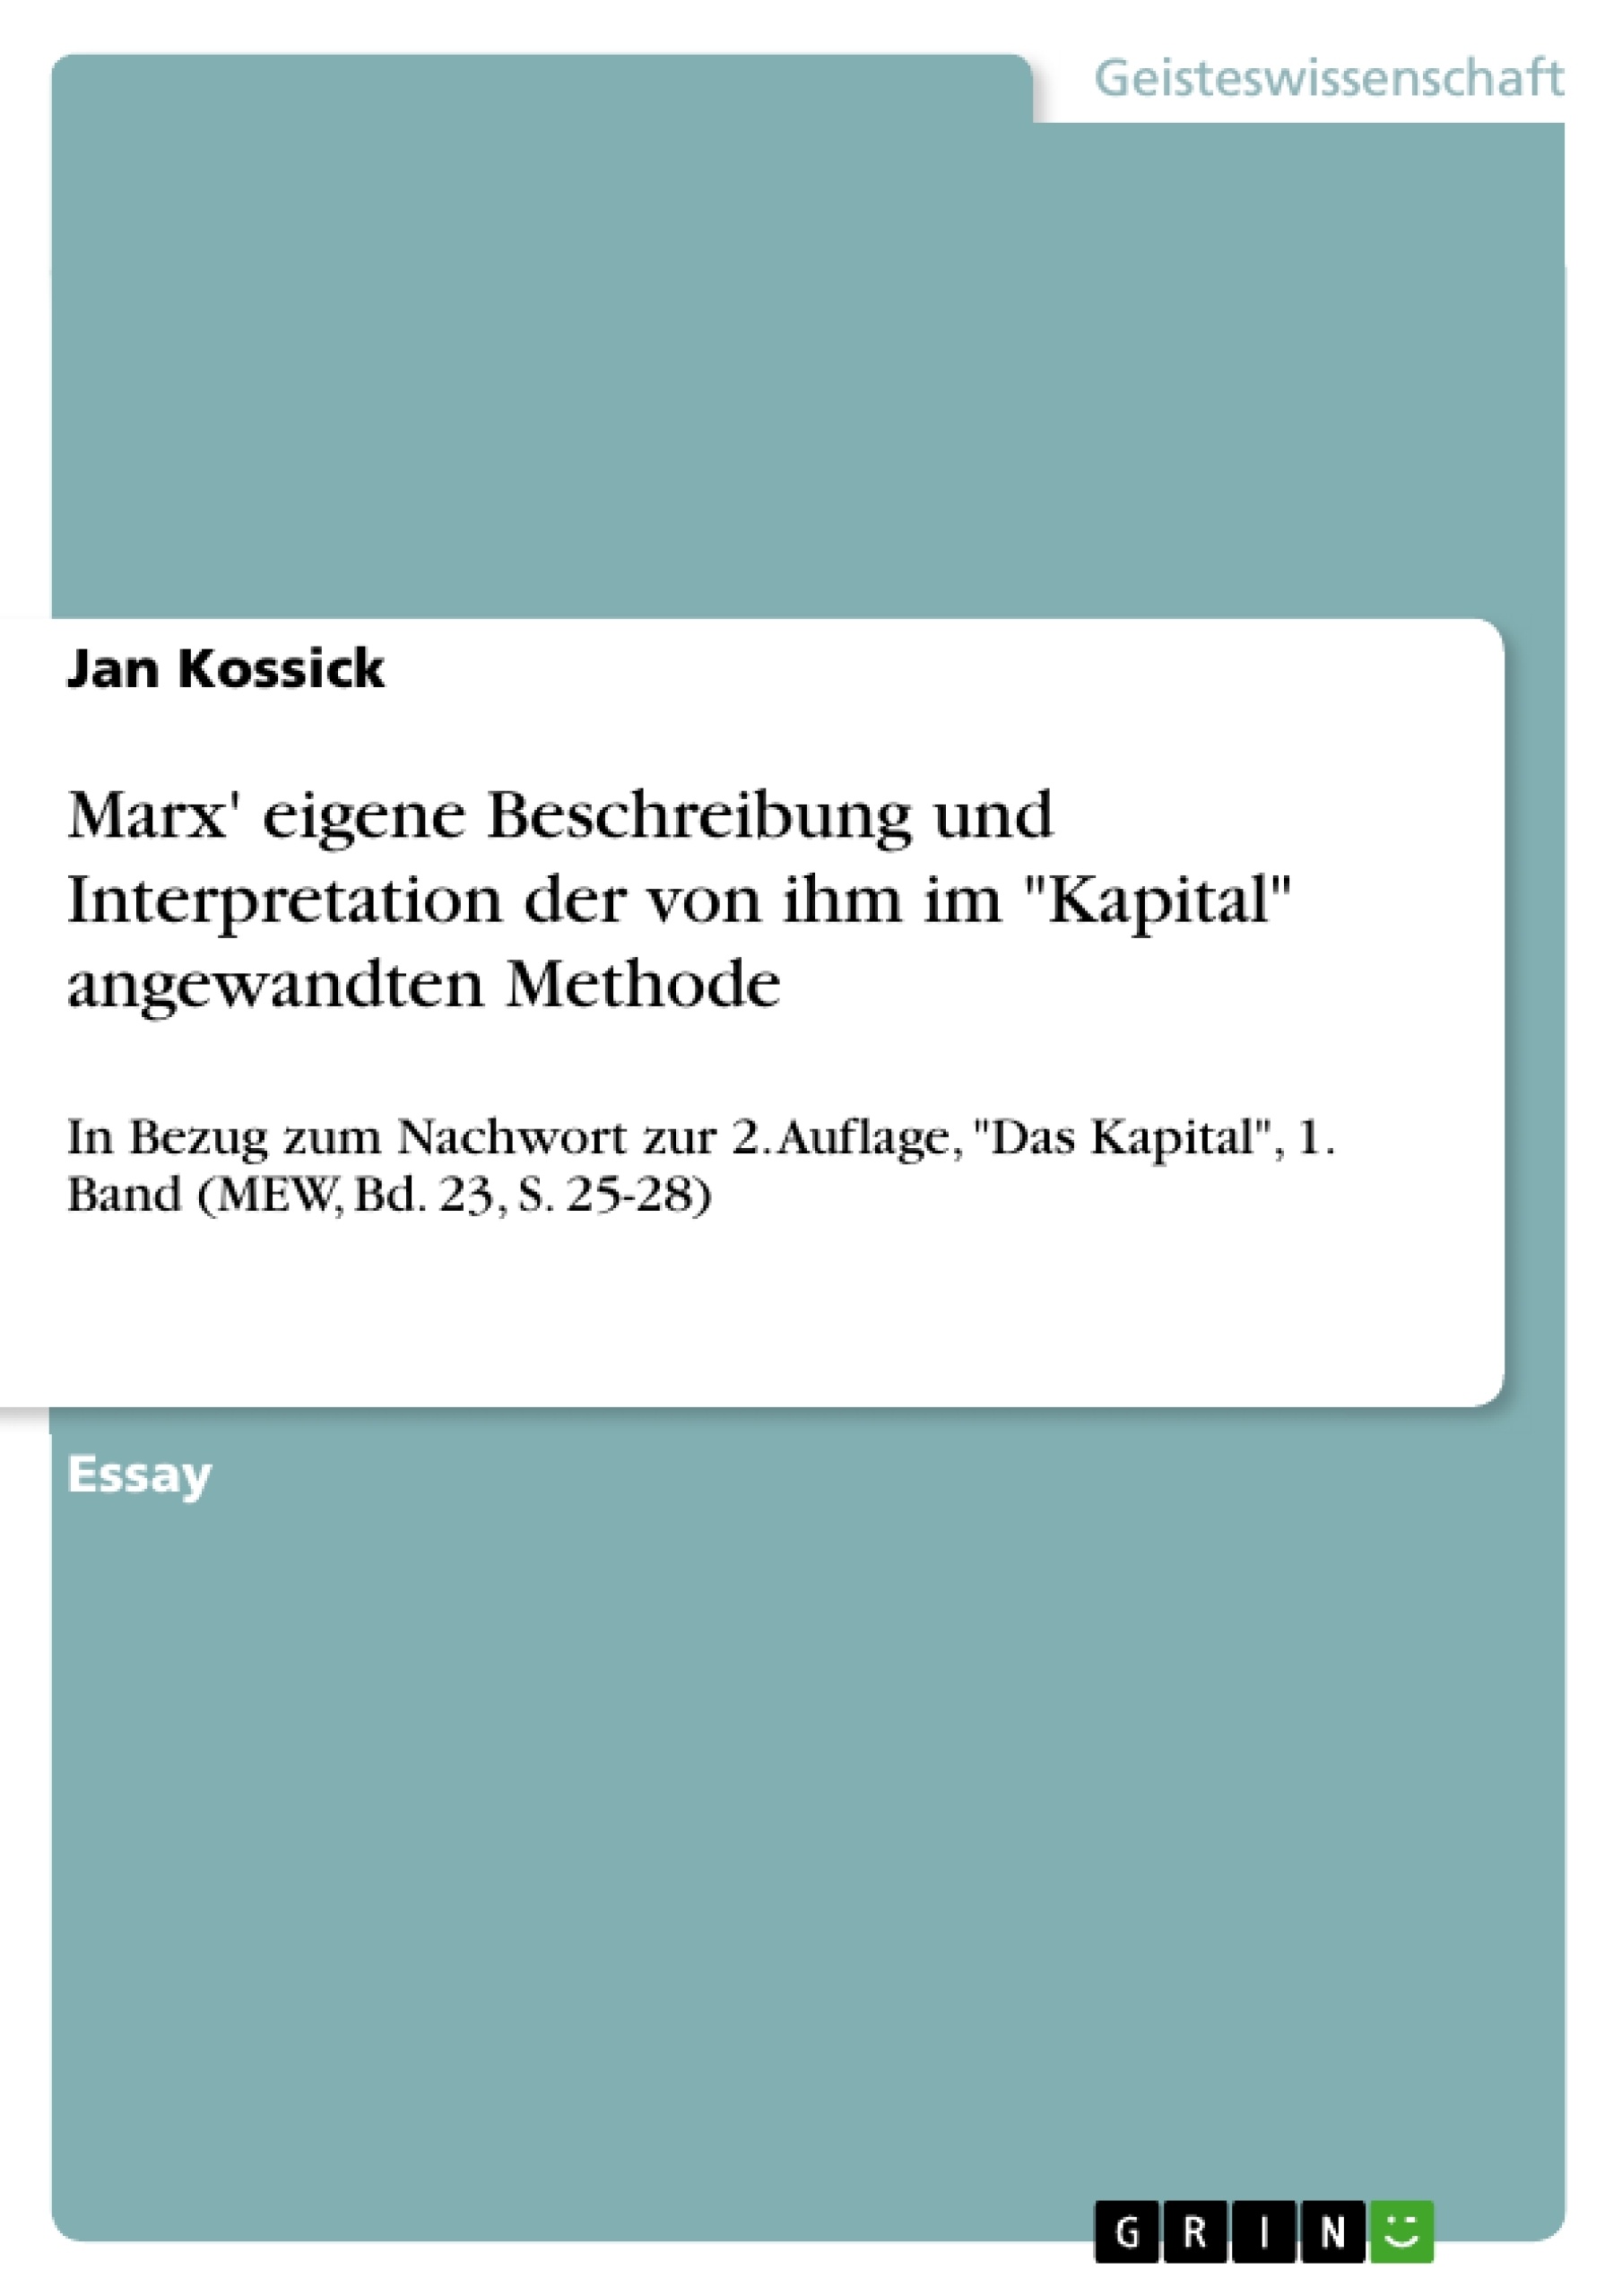 Título: Marx' eigene Beschreibung und Interpretation der von ihm im "Kapital" angewandten Methode